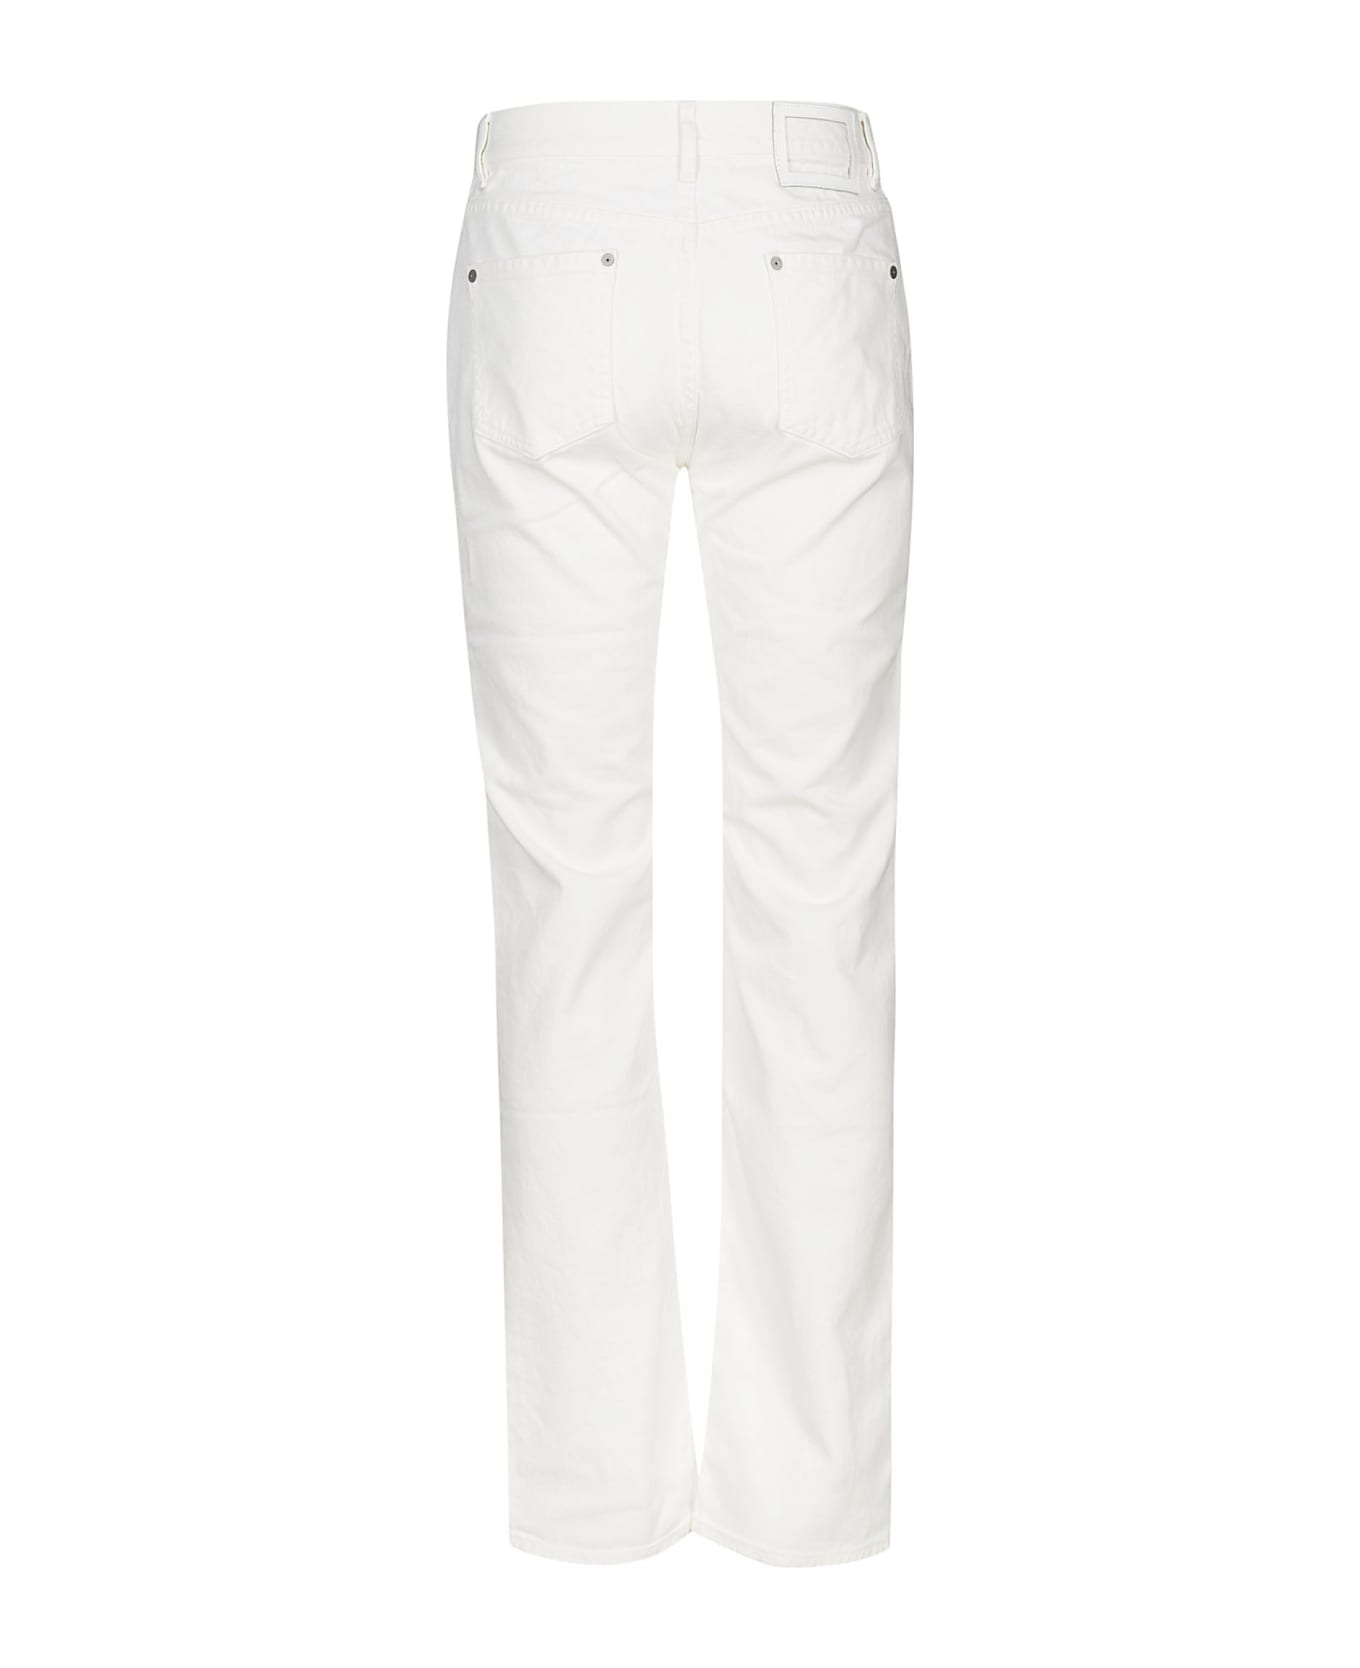 Maison Margiela Waist Fit Jeans - White